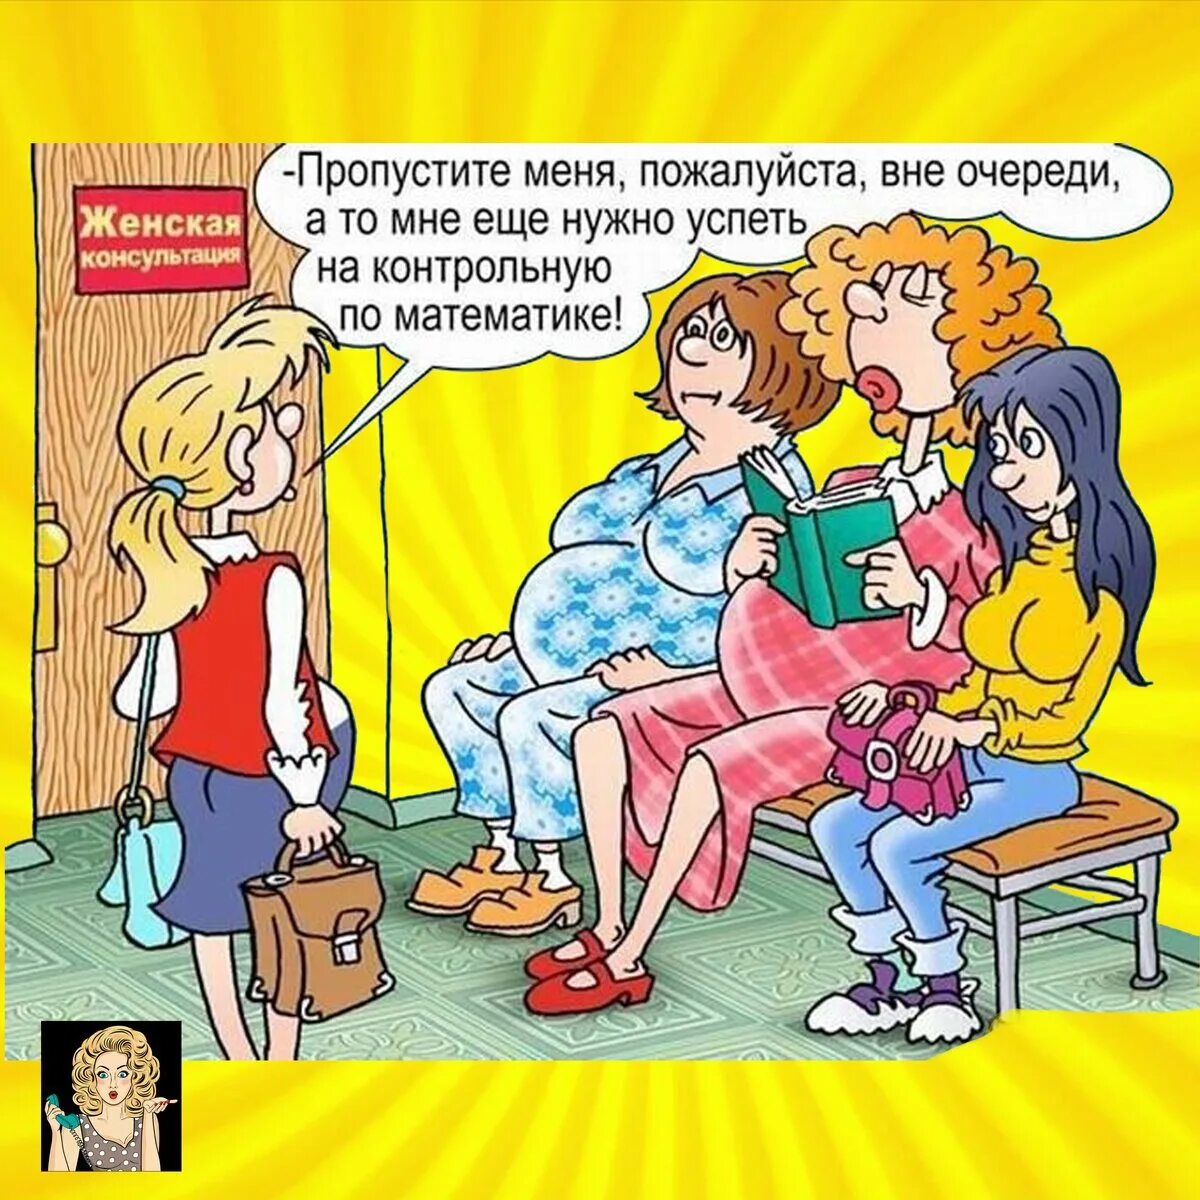 Анекдоты про беременных смешные. Карикатуры на женщин смешные. Беременность карикатура. Шутшутки про беременных.